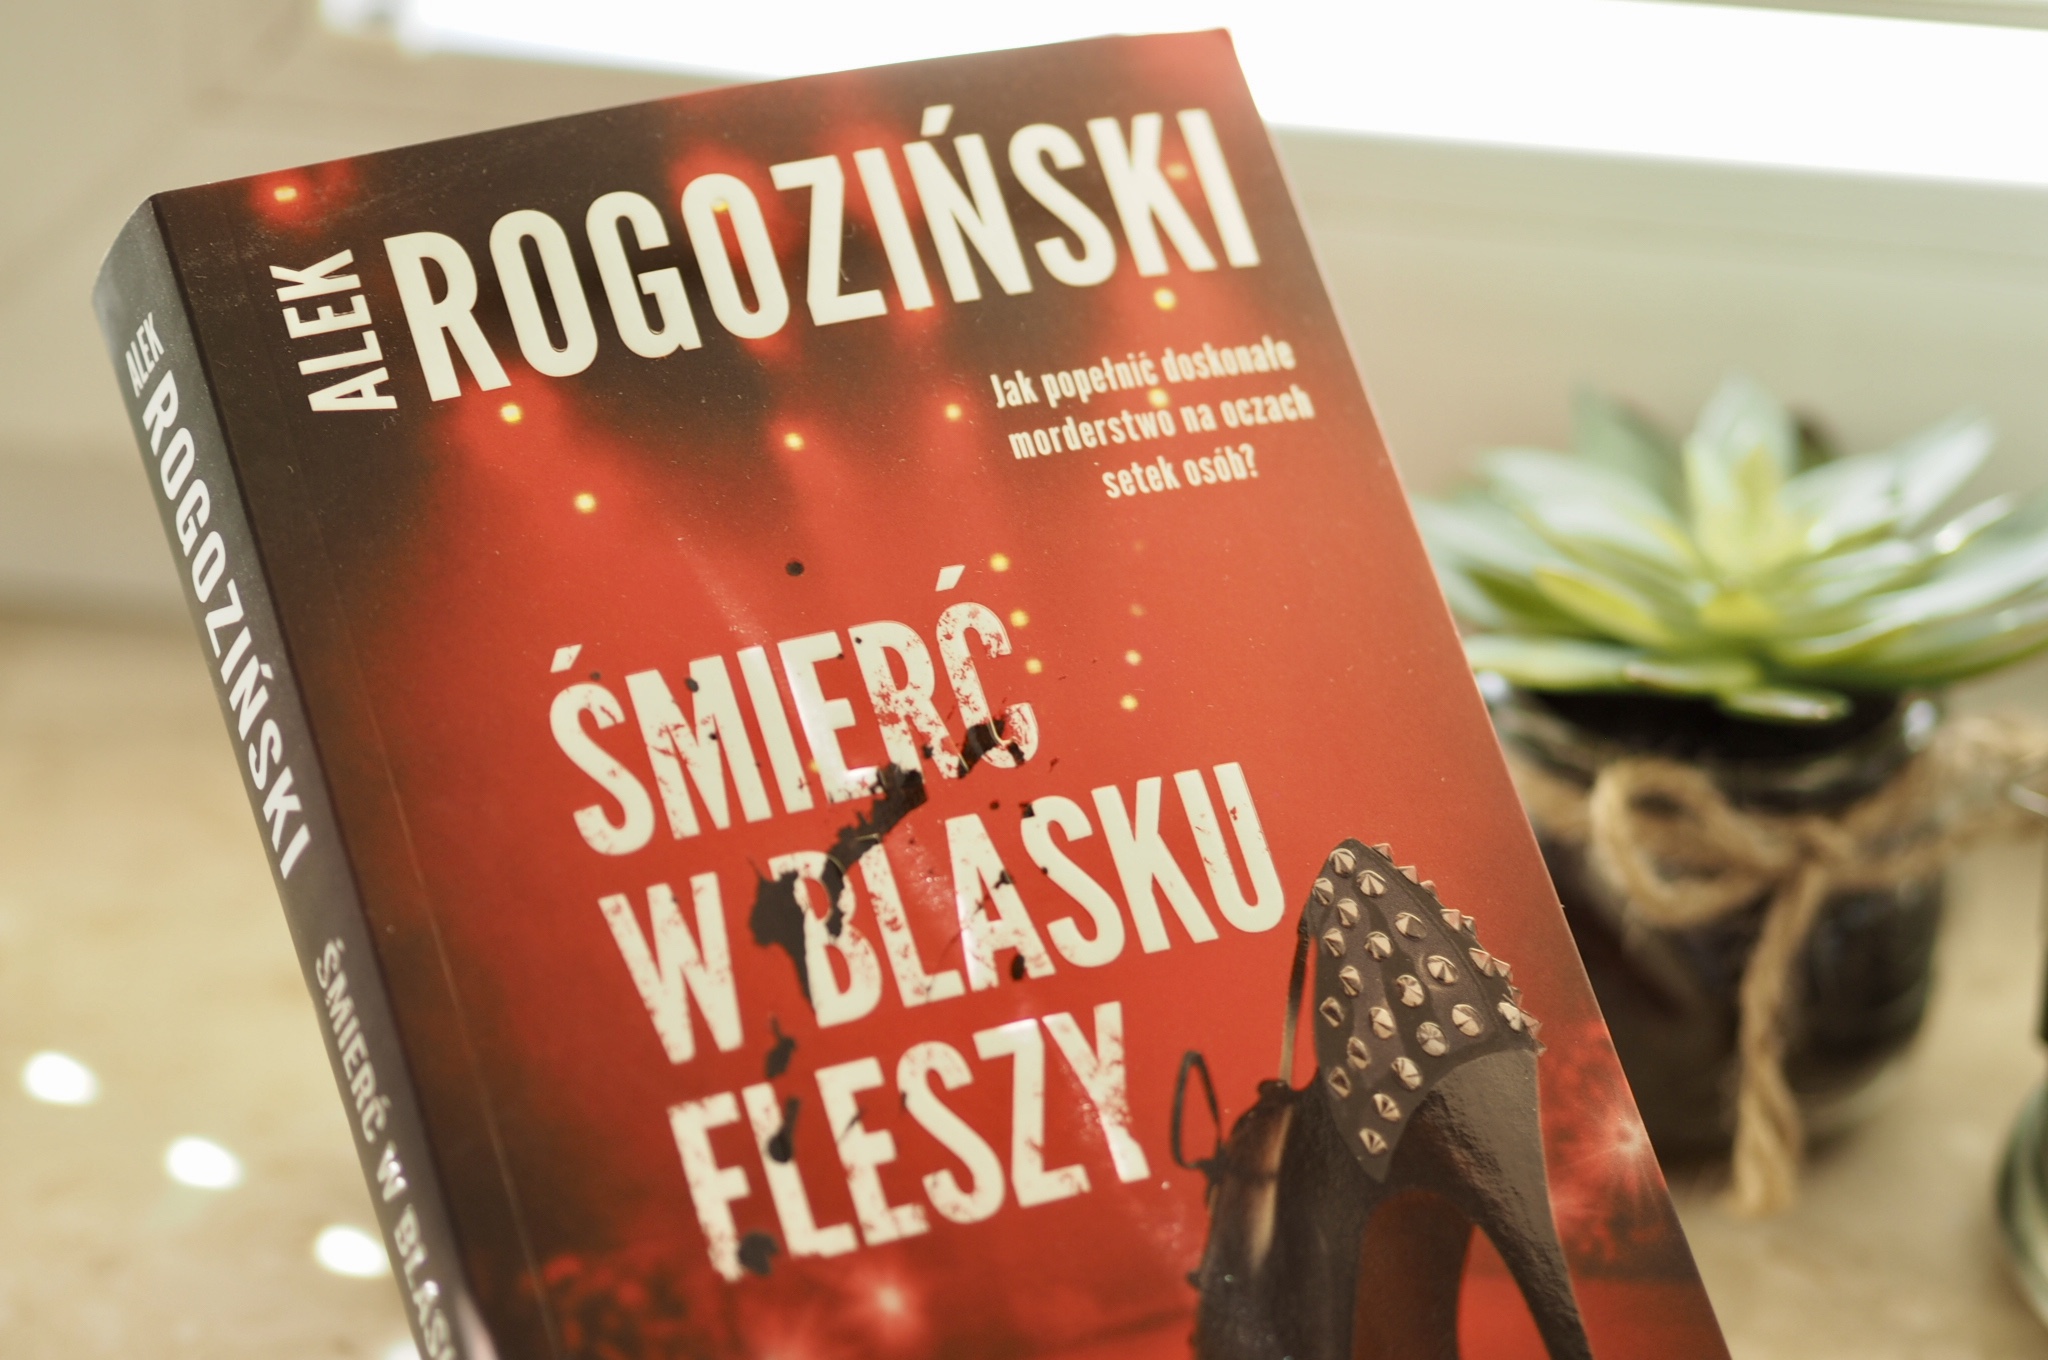 Alek Rogoziński "Smierć w blasku fleszy"